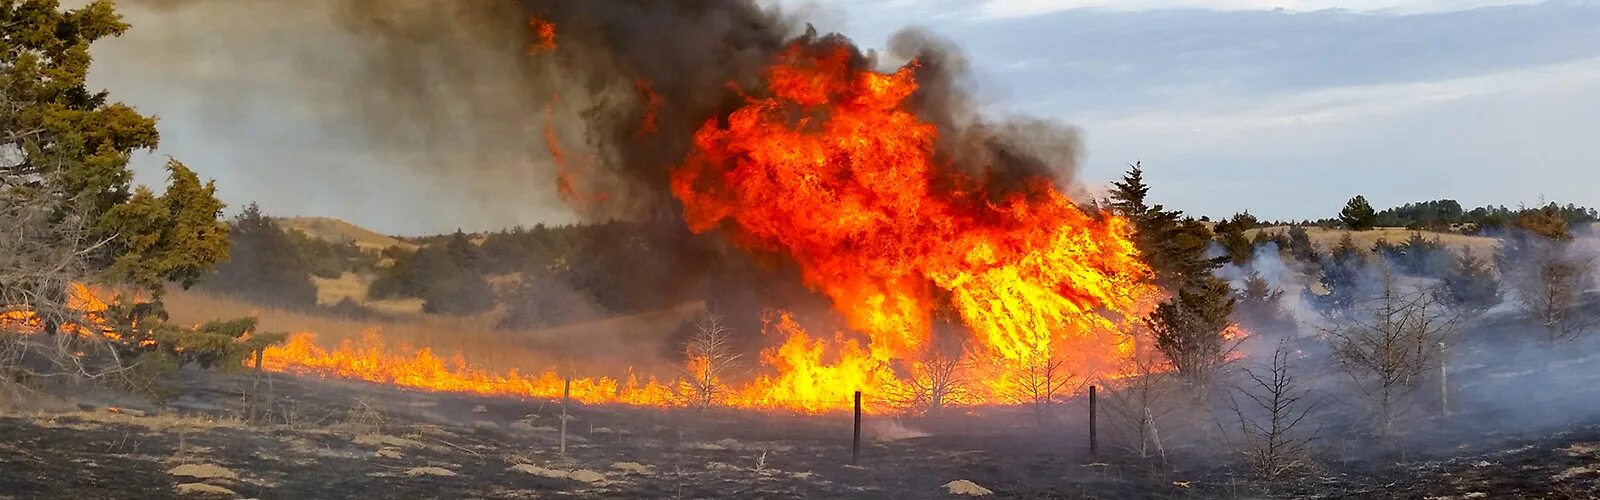 Экология пожары. Влияние пожаров на окружающую среду. Влияние лесных пожаров на почву. Воздействие пожара на почву. Ущерб от пожара третьим лицам